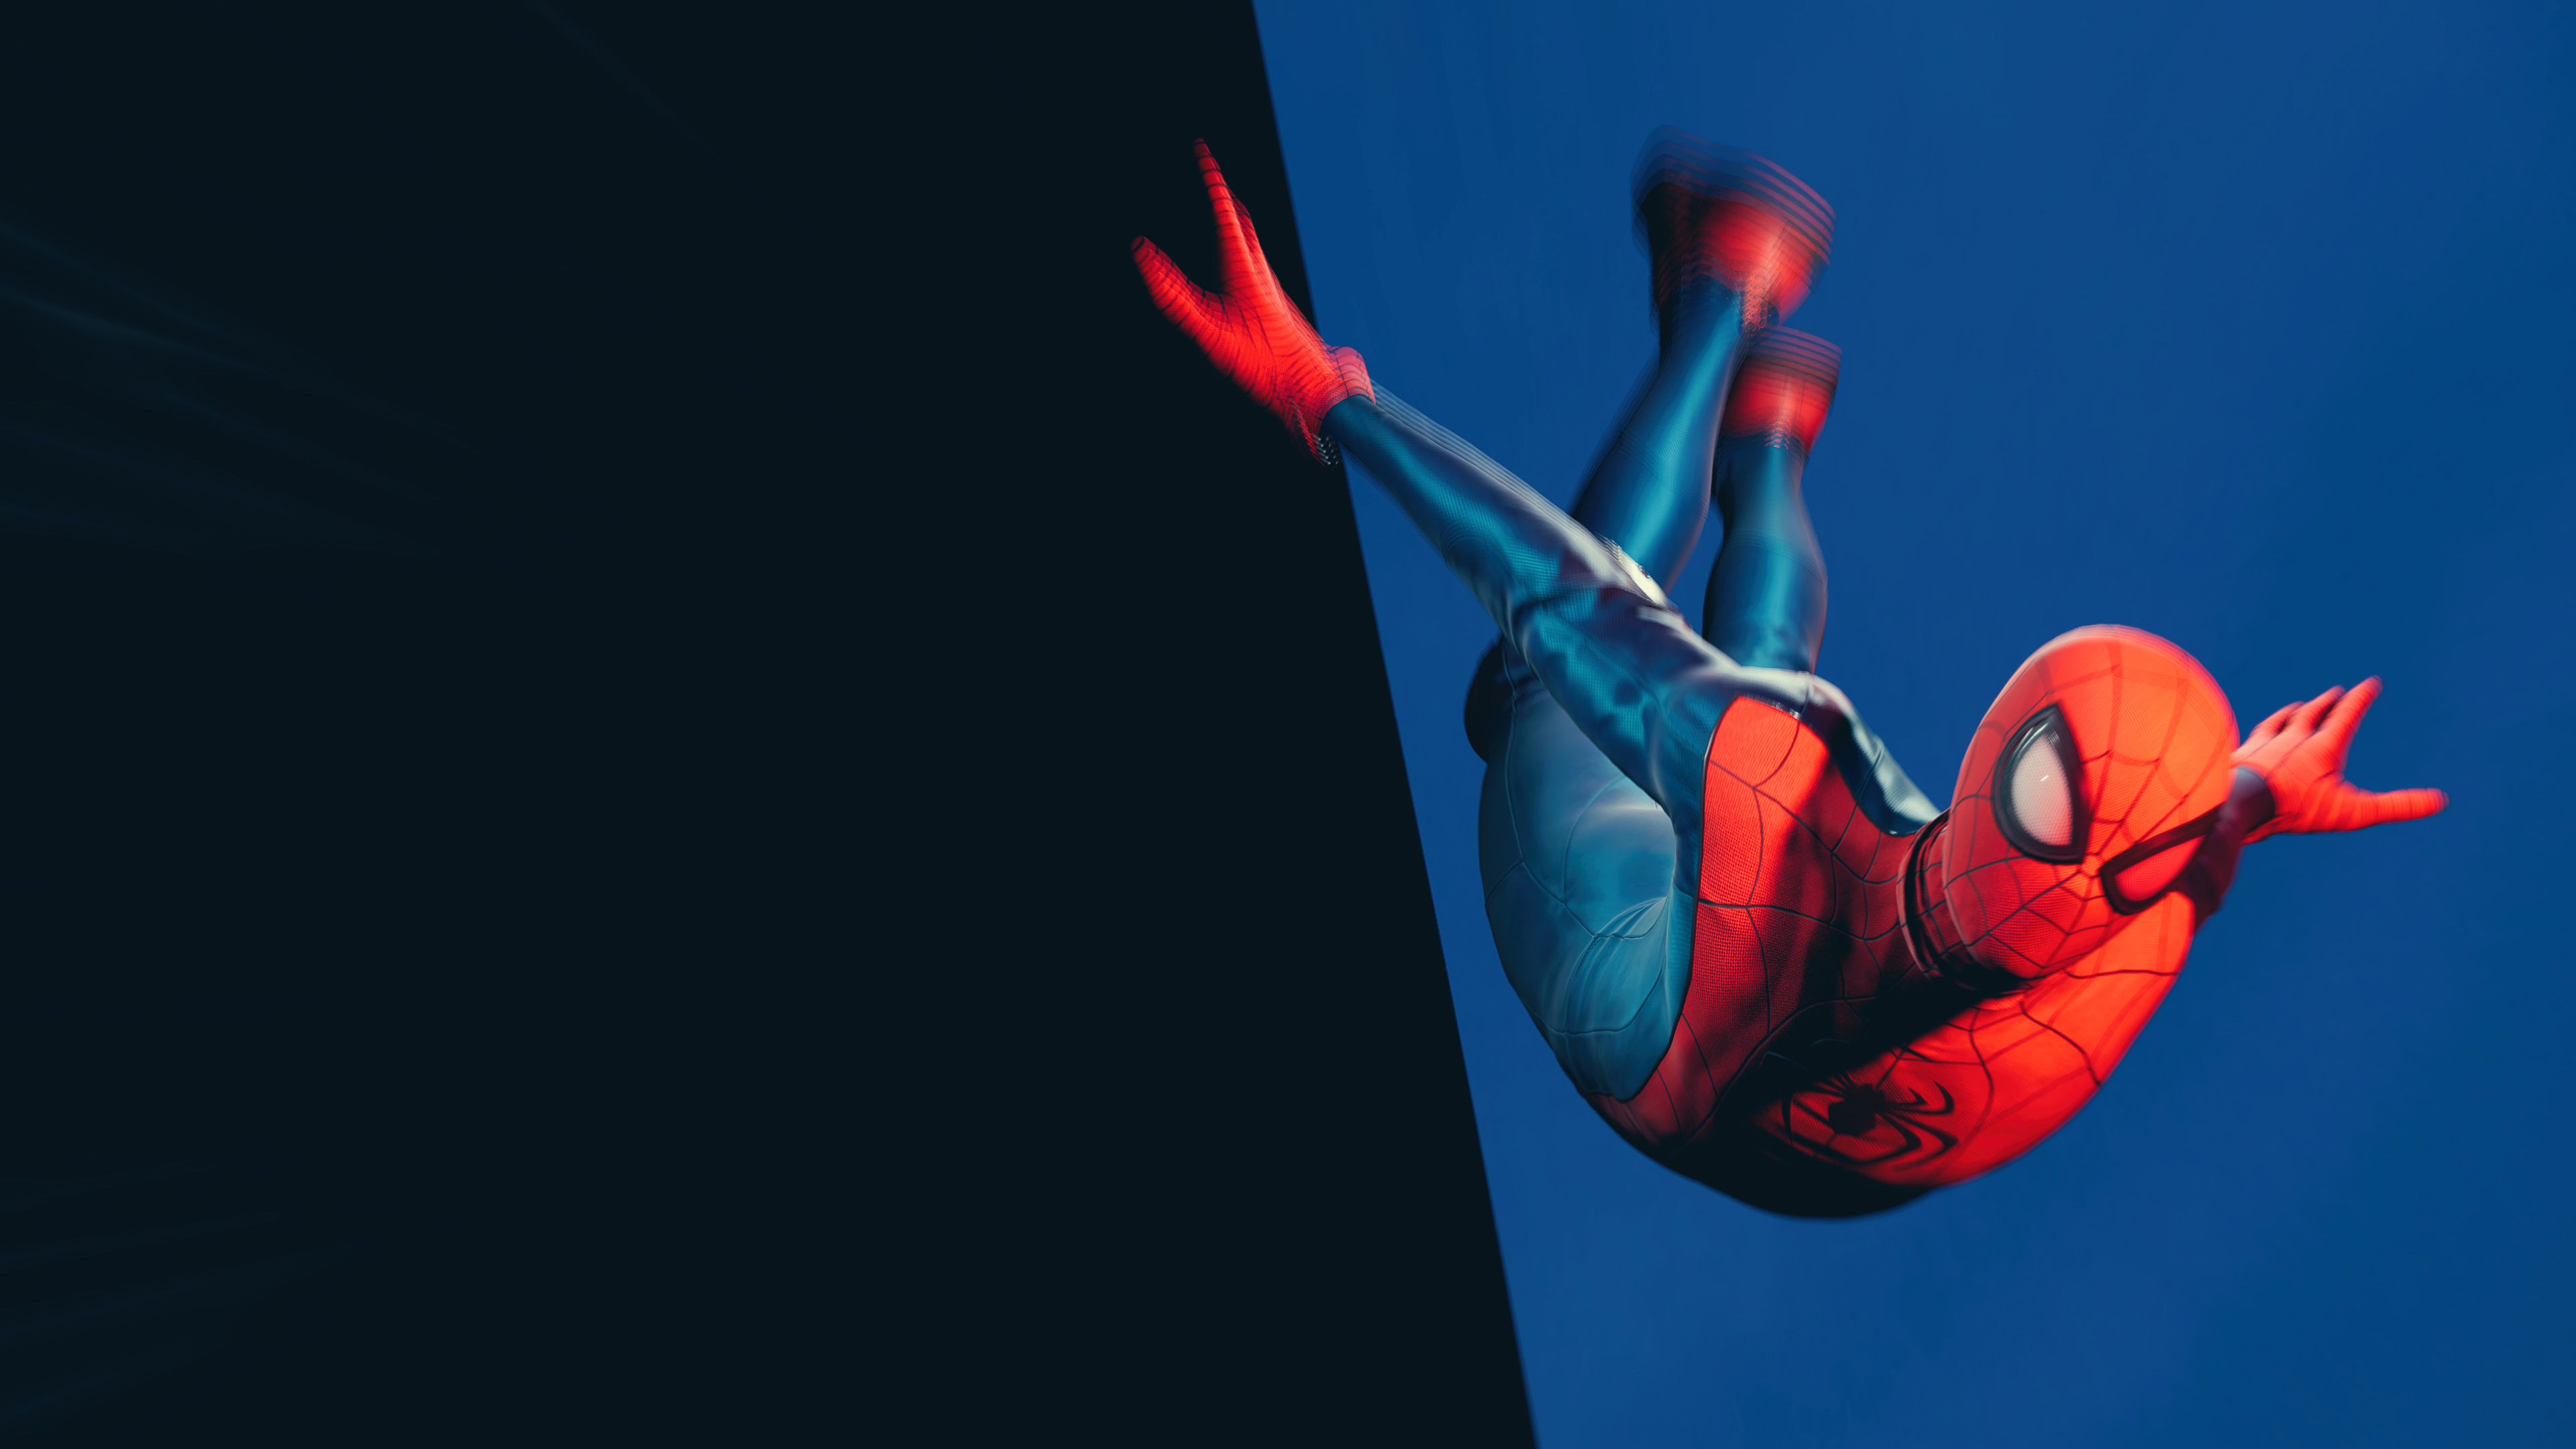 Marvel's Spider-Man: Miles Morales 4k Ultra HD Wallpaper